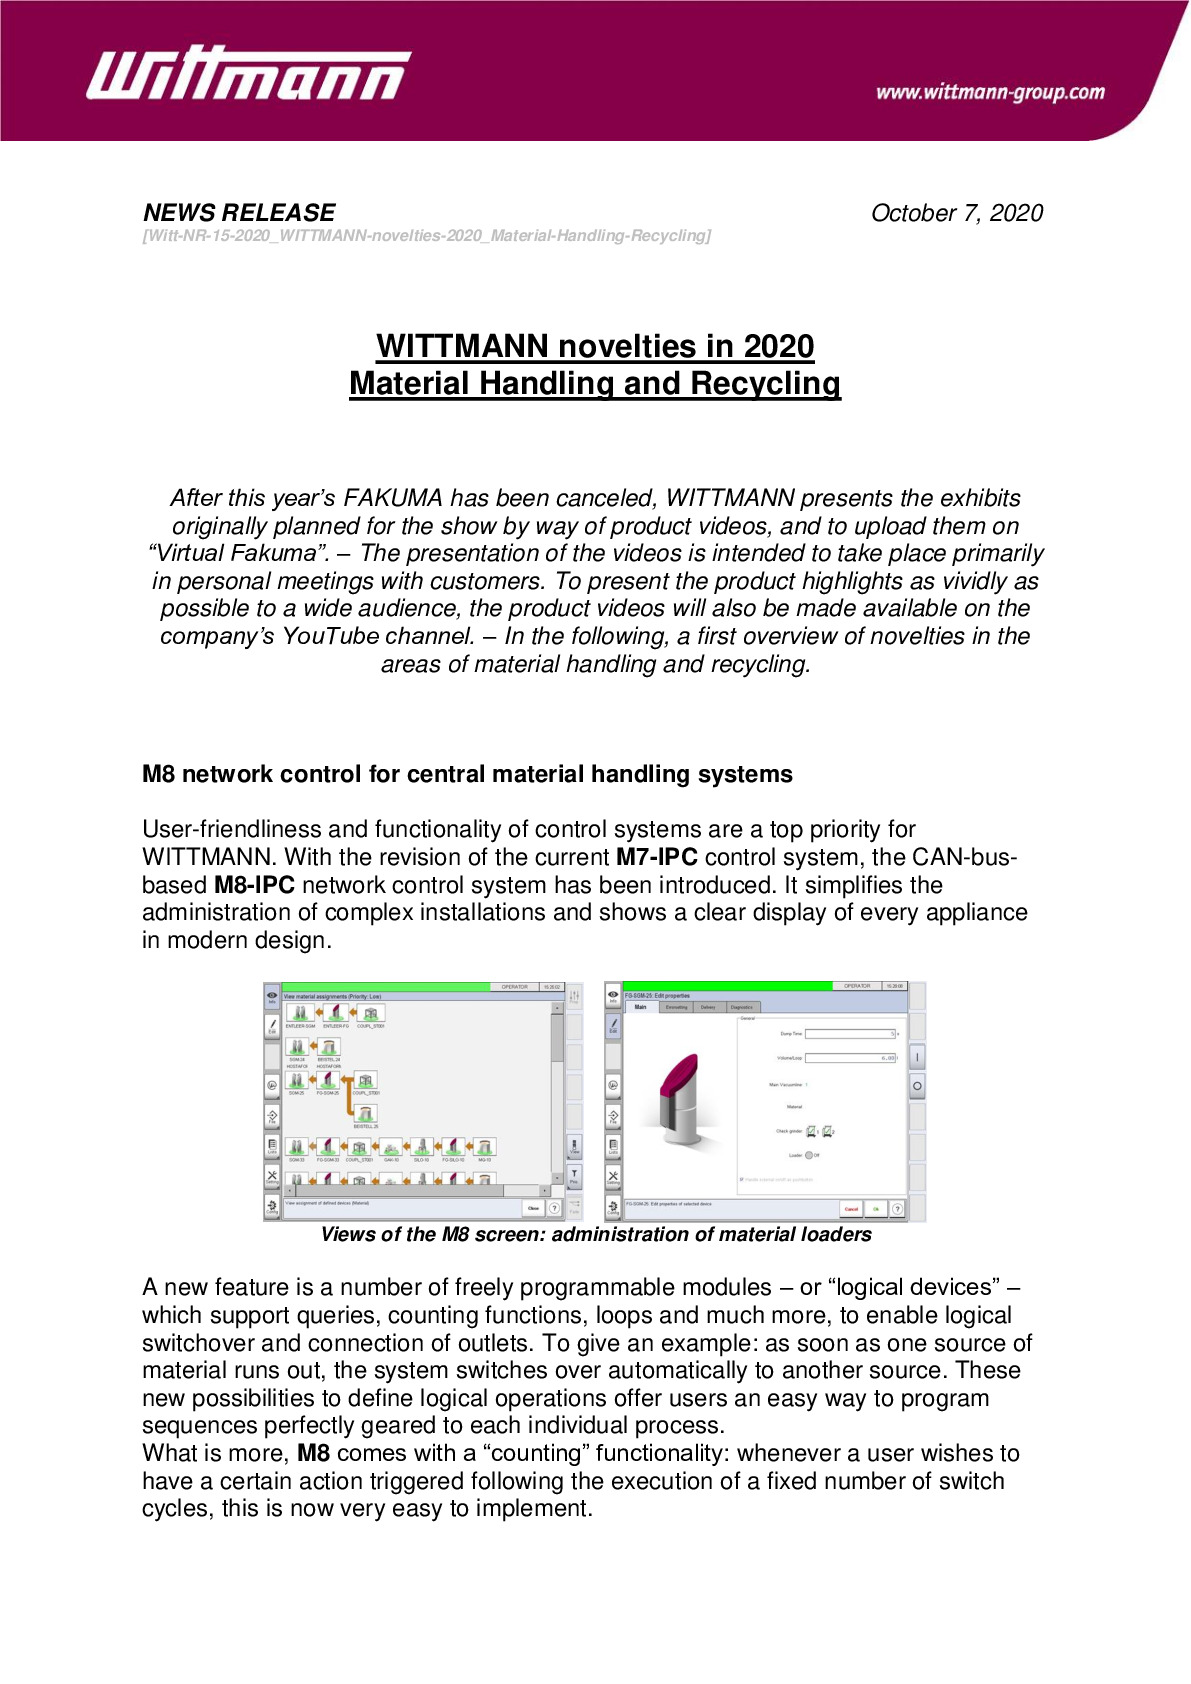 witt-nr-15-2020_wittmann-novelties-2020_material-handling-recycling